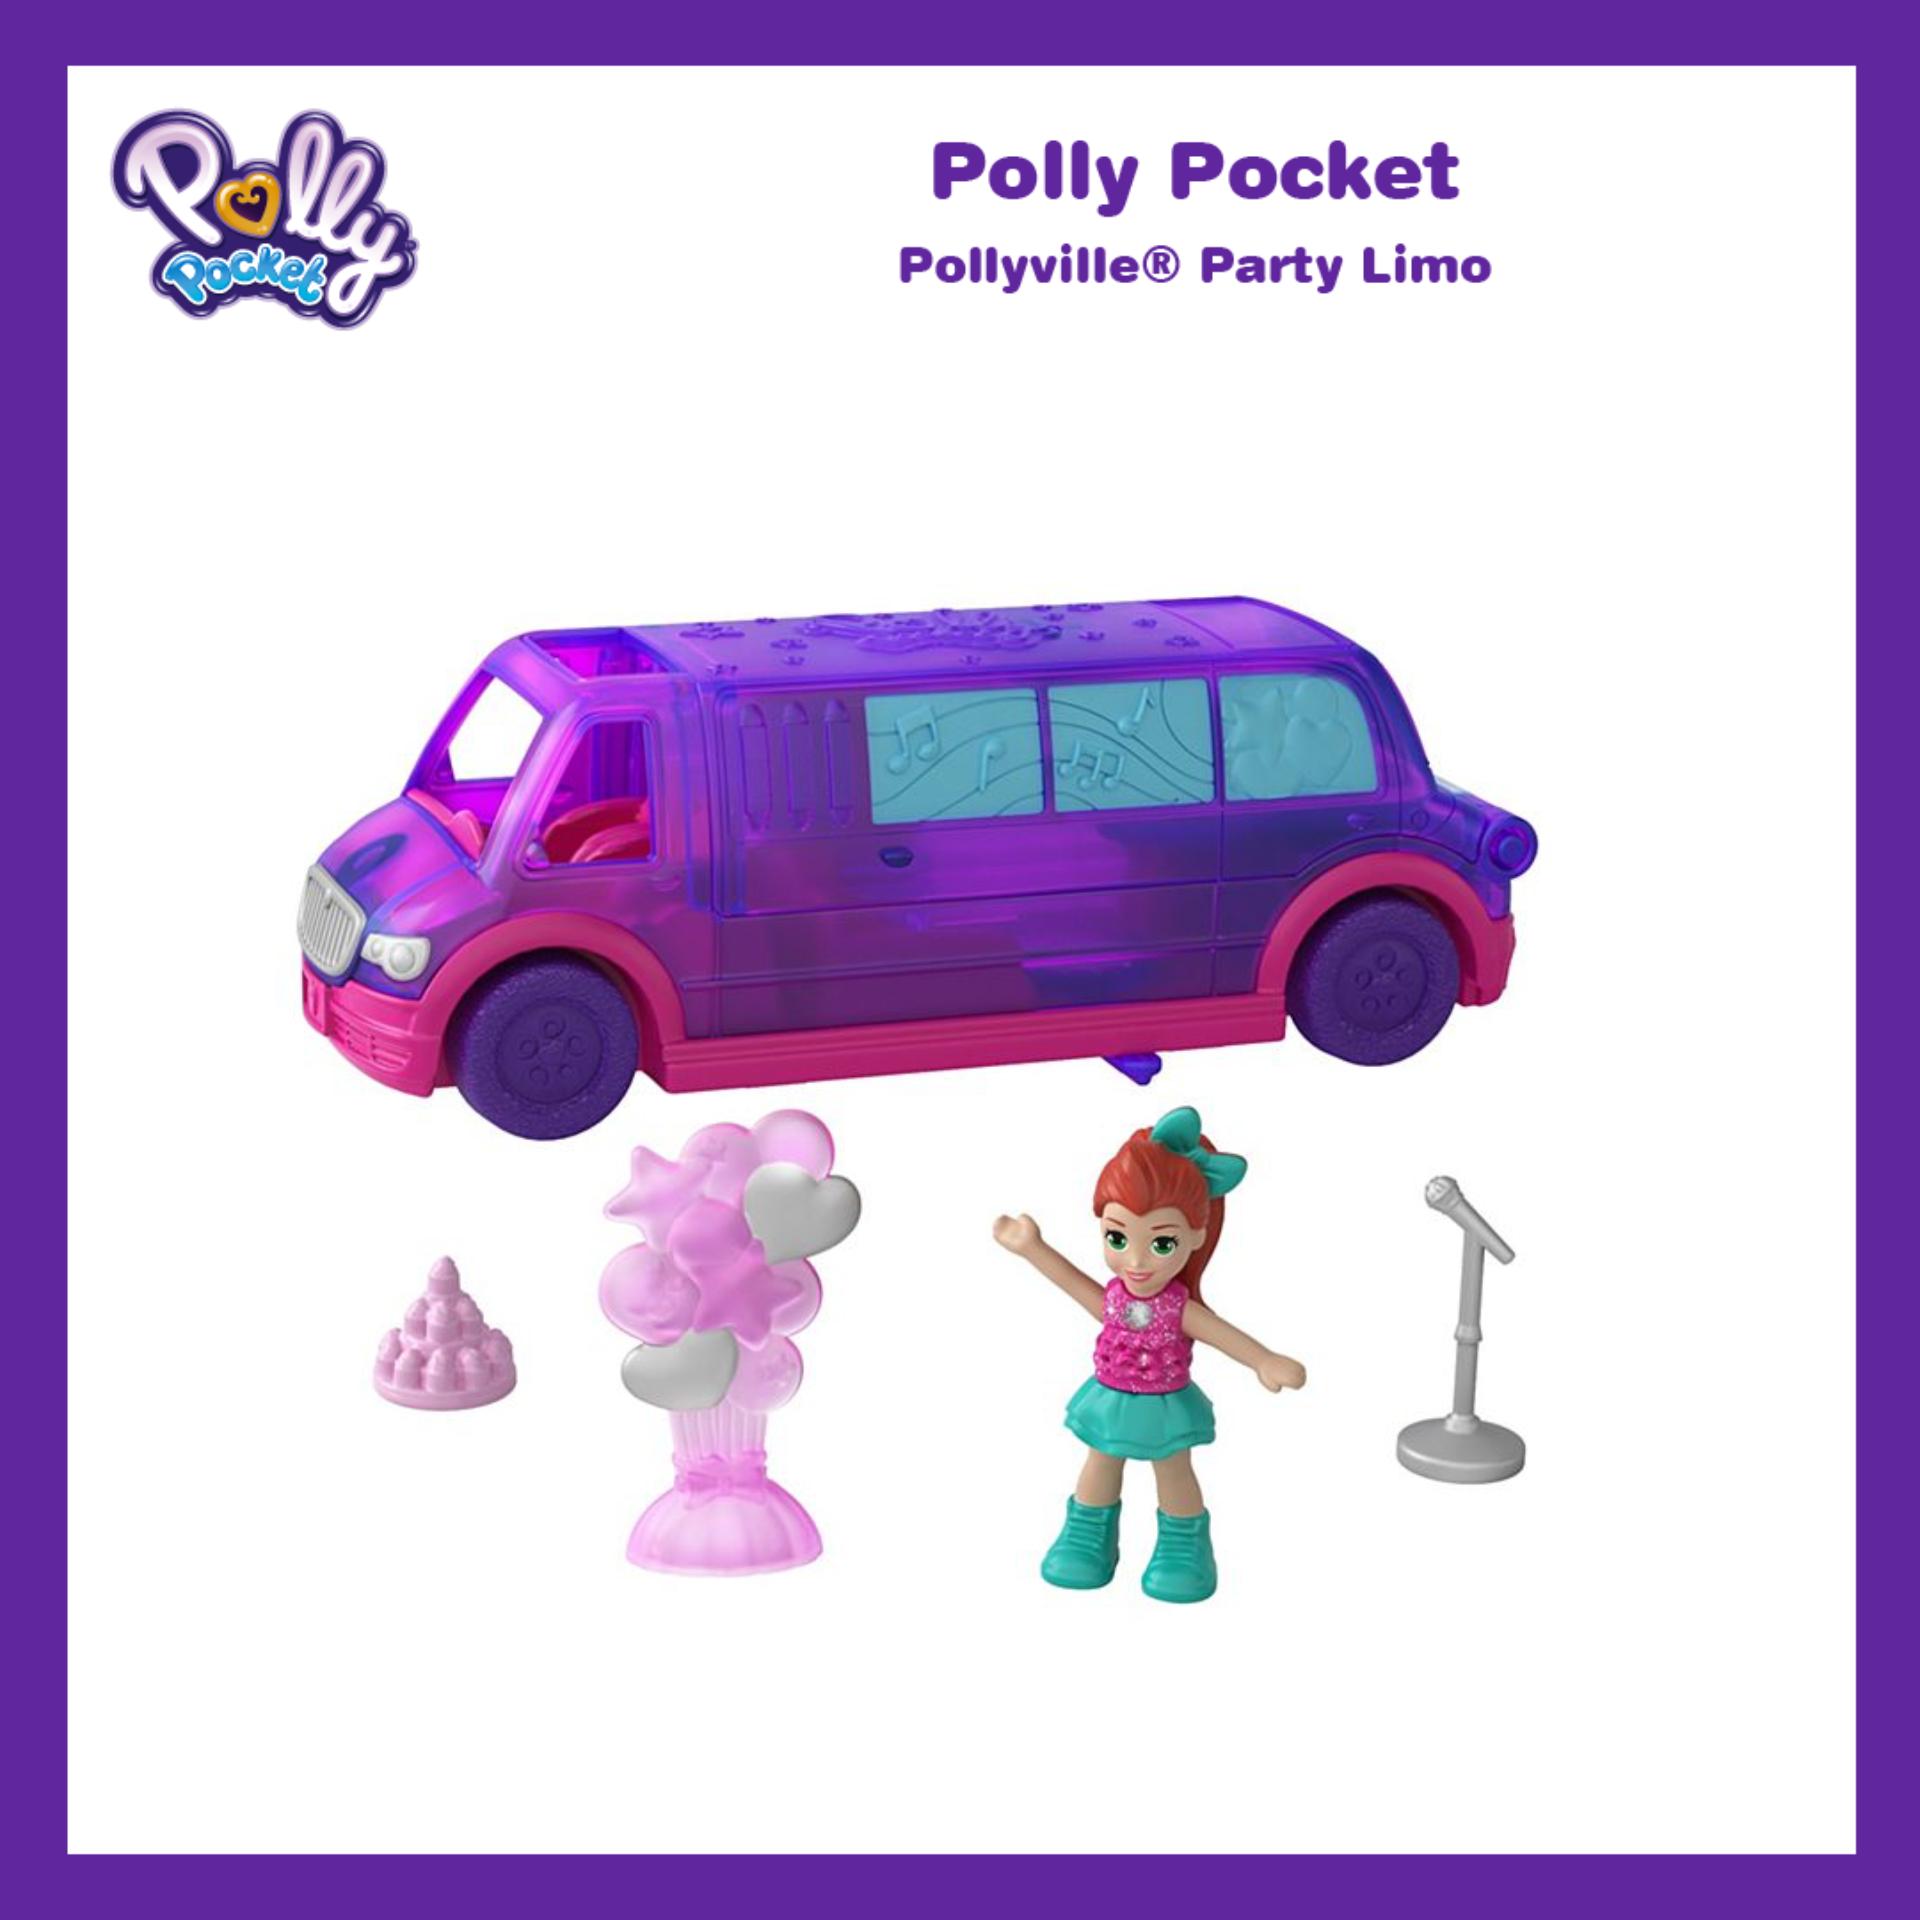 Polly Pocket® Pollyville® Party Limo ตุ๊กตา พอลลี่ พ็อคเก็ต พอลลี่วิลล์ ปาร์ตี้ ลิโม่ รถลีมูซีน ของเล่น ของเล่นเด็ก